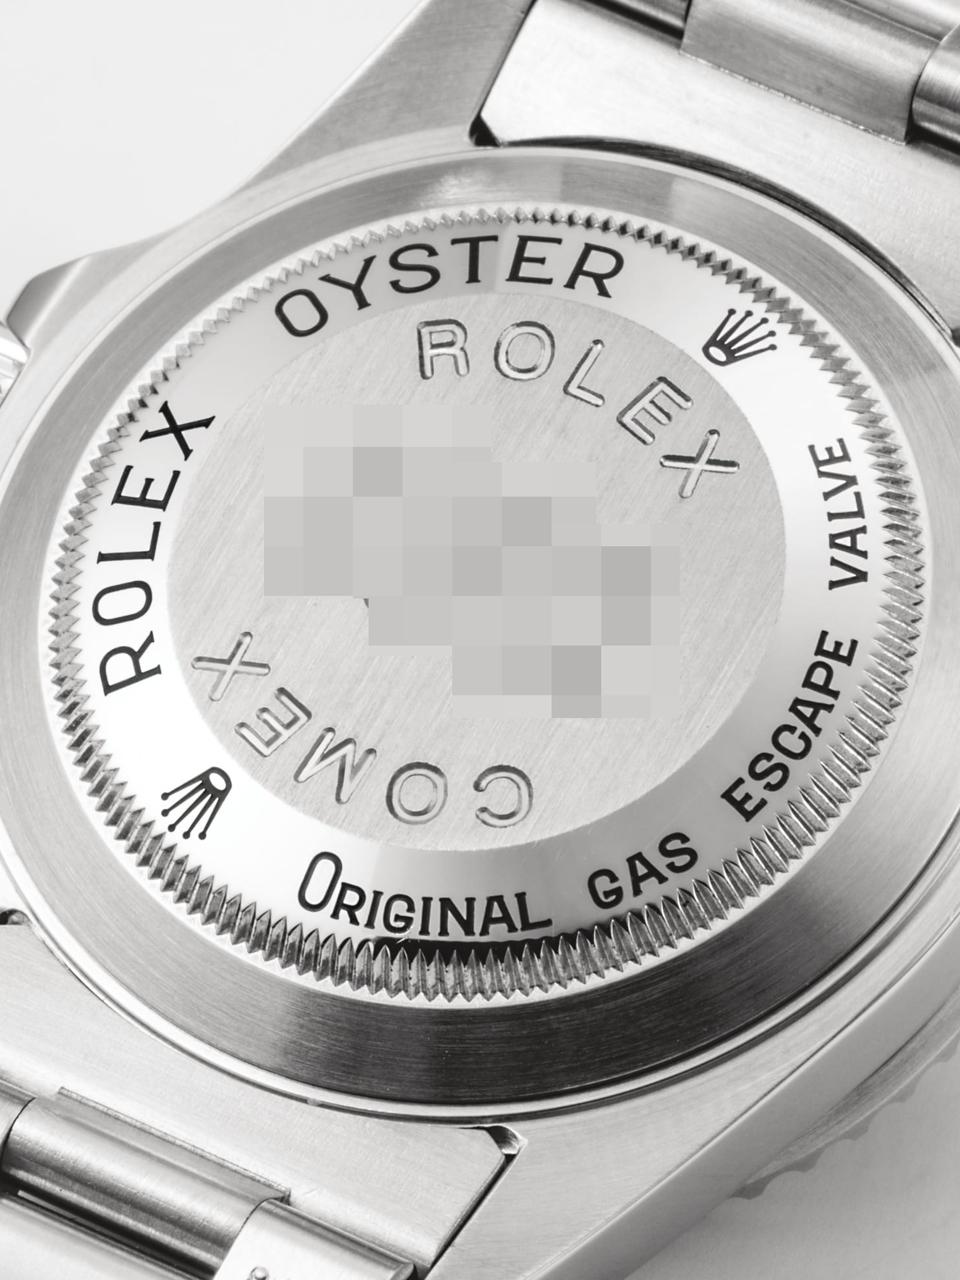 20170307-Rolex-submariner-comex-5514-21